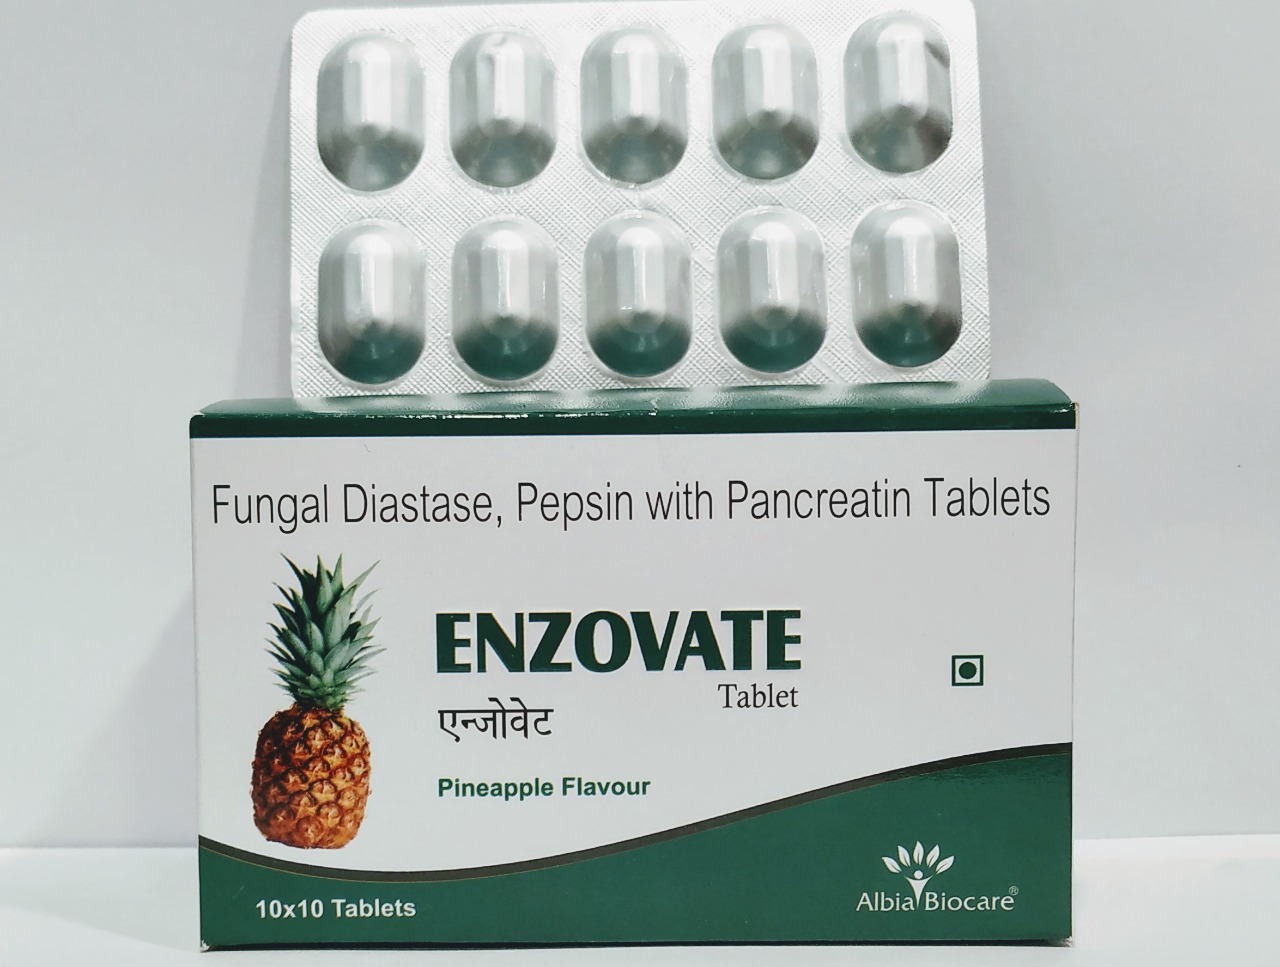 ENZOVATE Tablet | Fungal Diastase (1:1200) 10mg + Pepsin (1:3000) 5mg + Pancreatin 200mg 